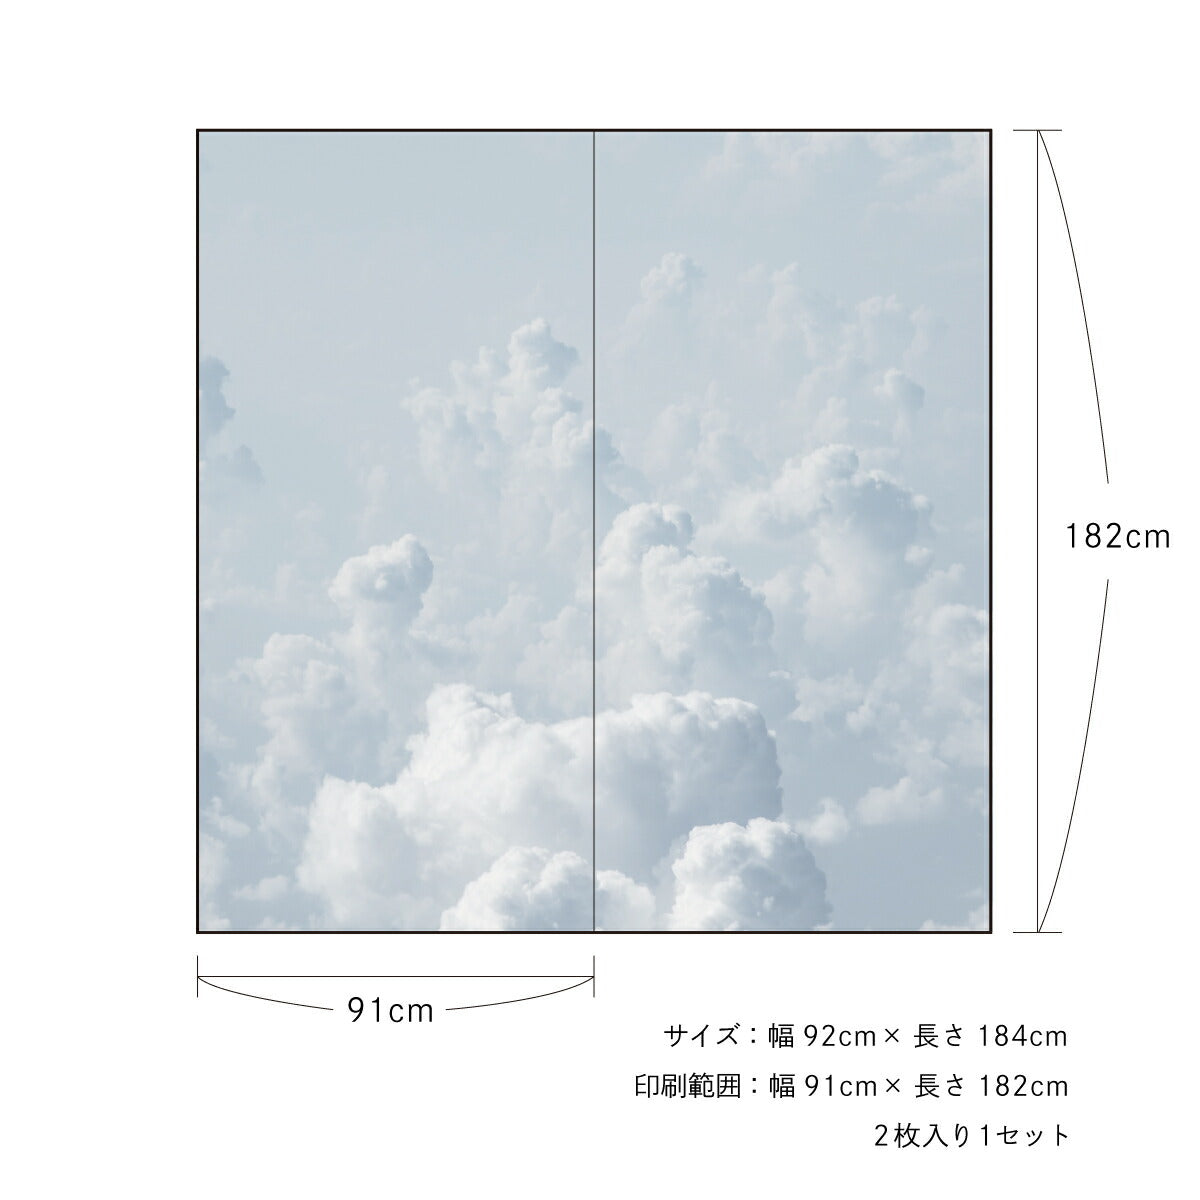 ふすま紙 空もよう襖紙 sky-05F Gloomy sky 91cm×182cm 2枚1組 水で貼るタイプ アサヒペン<br>おしゃれ 洋風 空 くもり空 雲 曇り 柄 アート デザイン 再湿 ふすま<br>